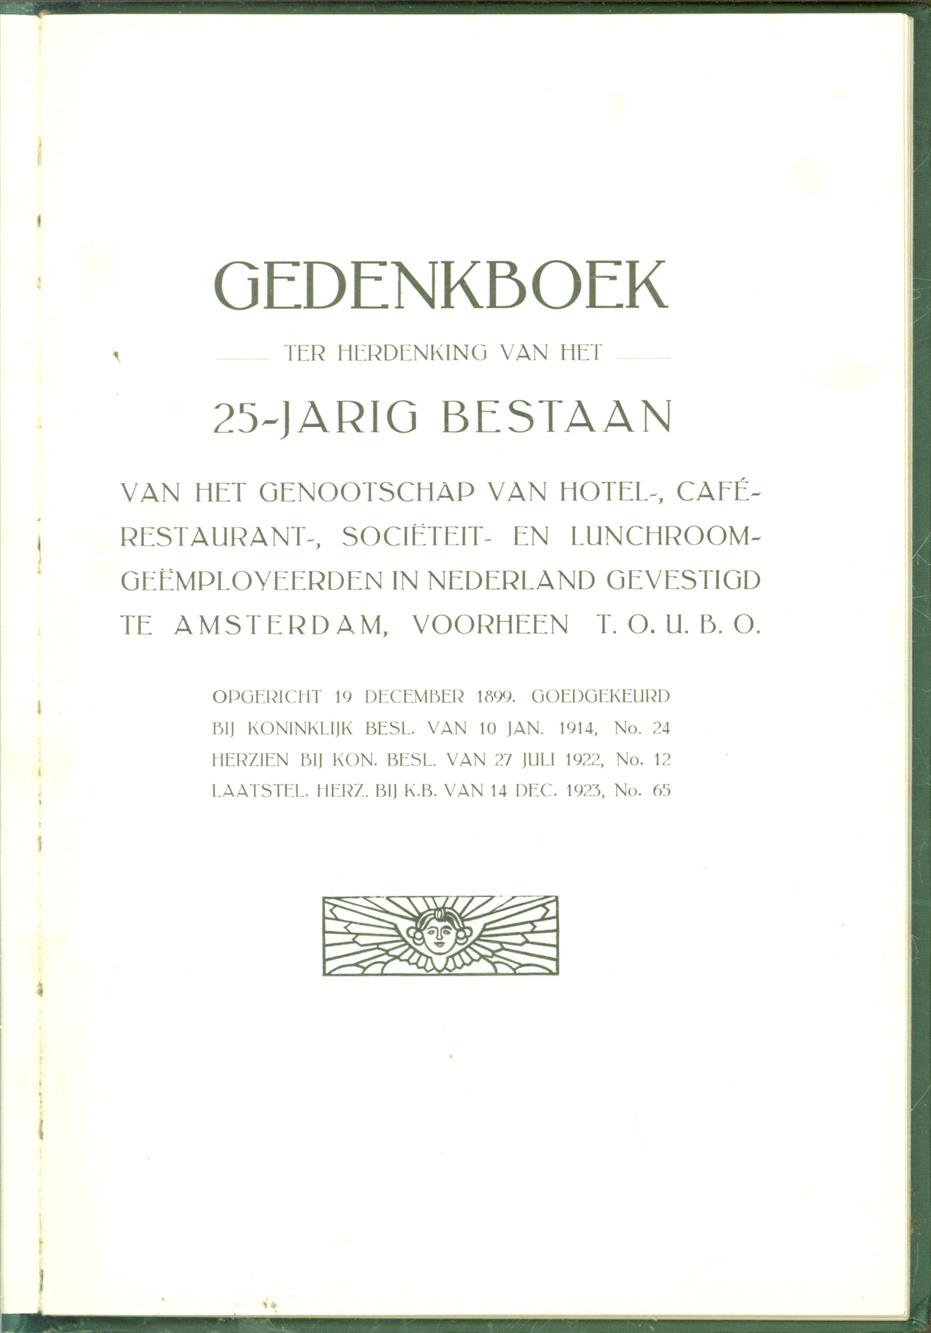 n.n. - Gedenkboek ter herdenking van het 25 - jarig bestaan van het genootschap van Hotel-, Caf-, Restaurant-, Sociteit-, en Lunchroo- gemployeerden in Nederland gevestigd te Amsterdam.